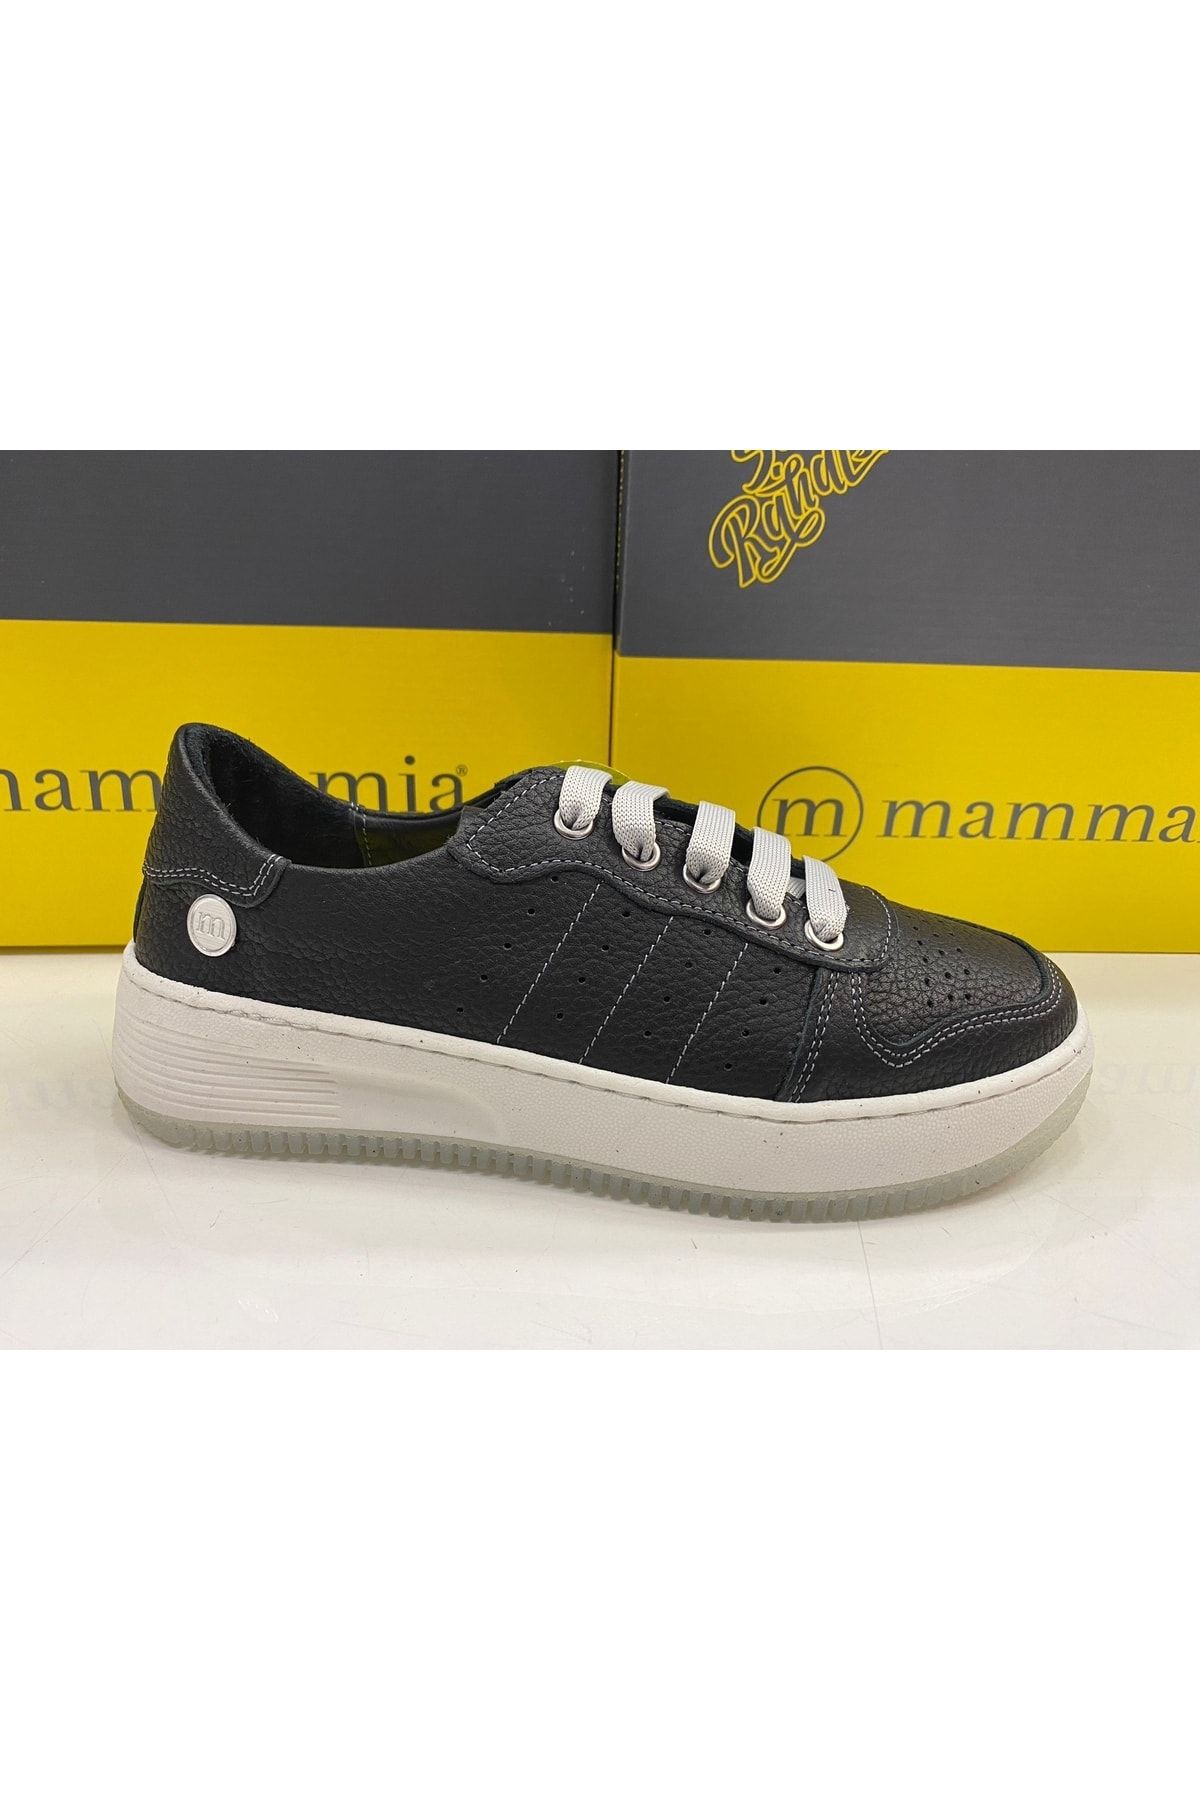 Mammamia D23ya-10 Günlük Sneakers Siyah Kadın Ayakkabı